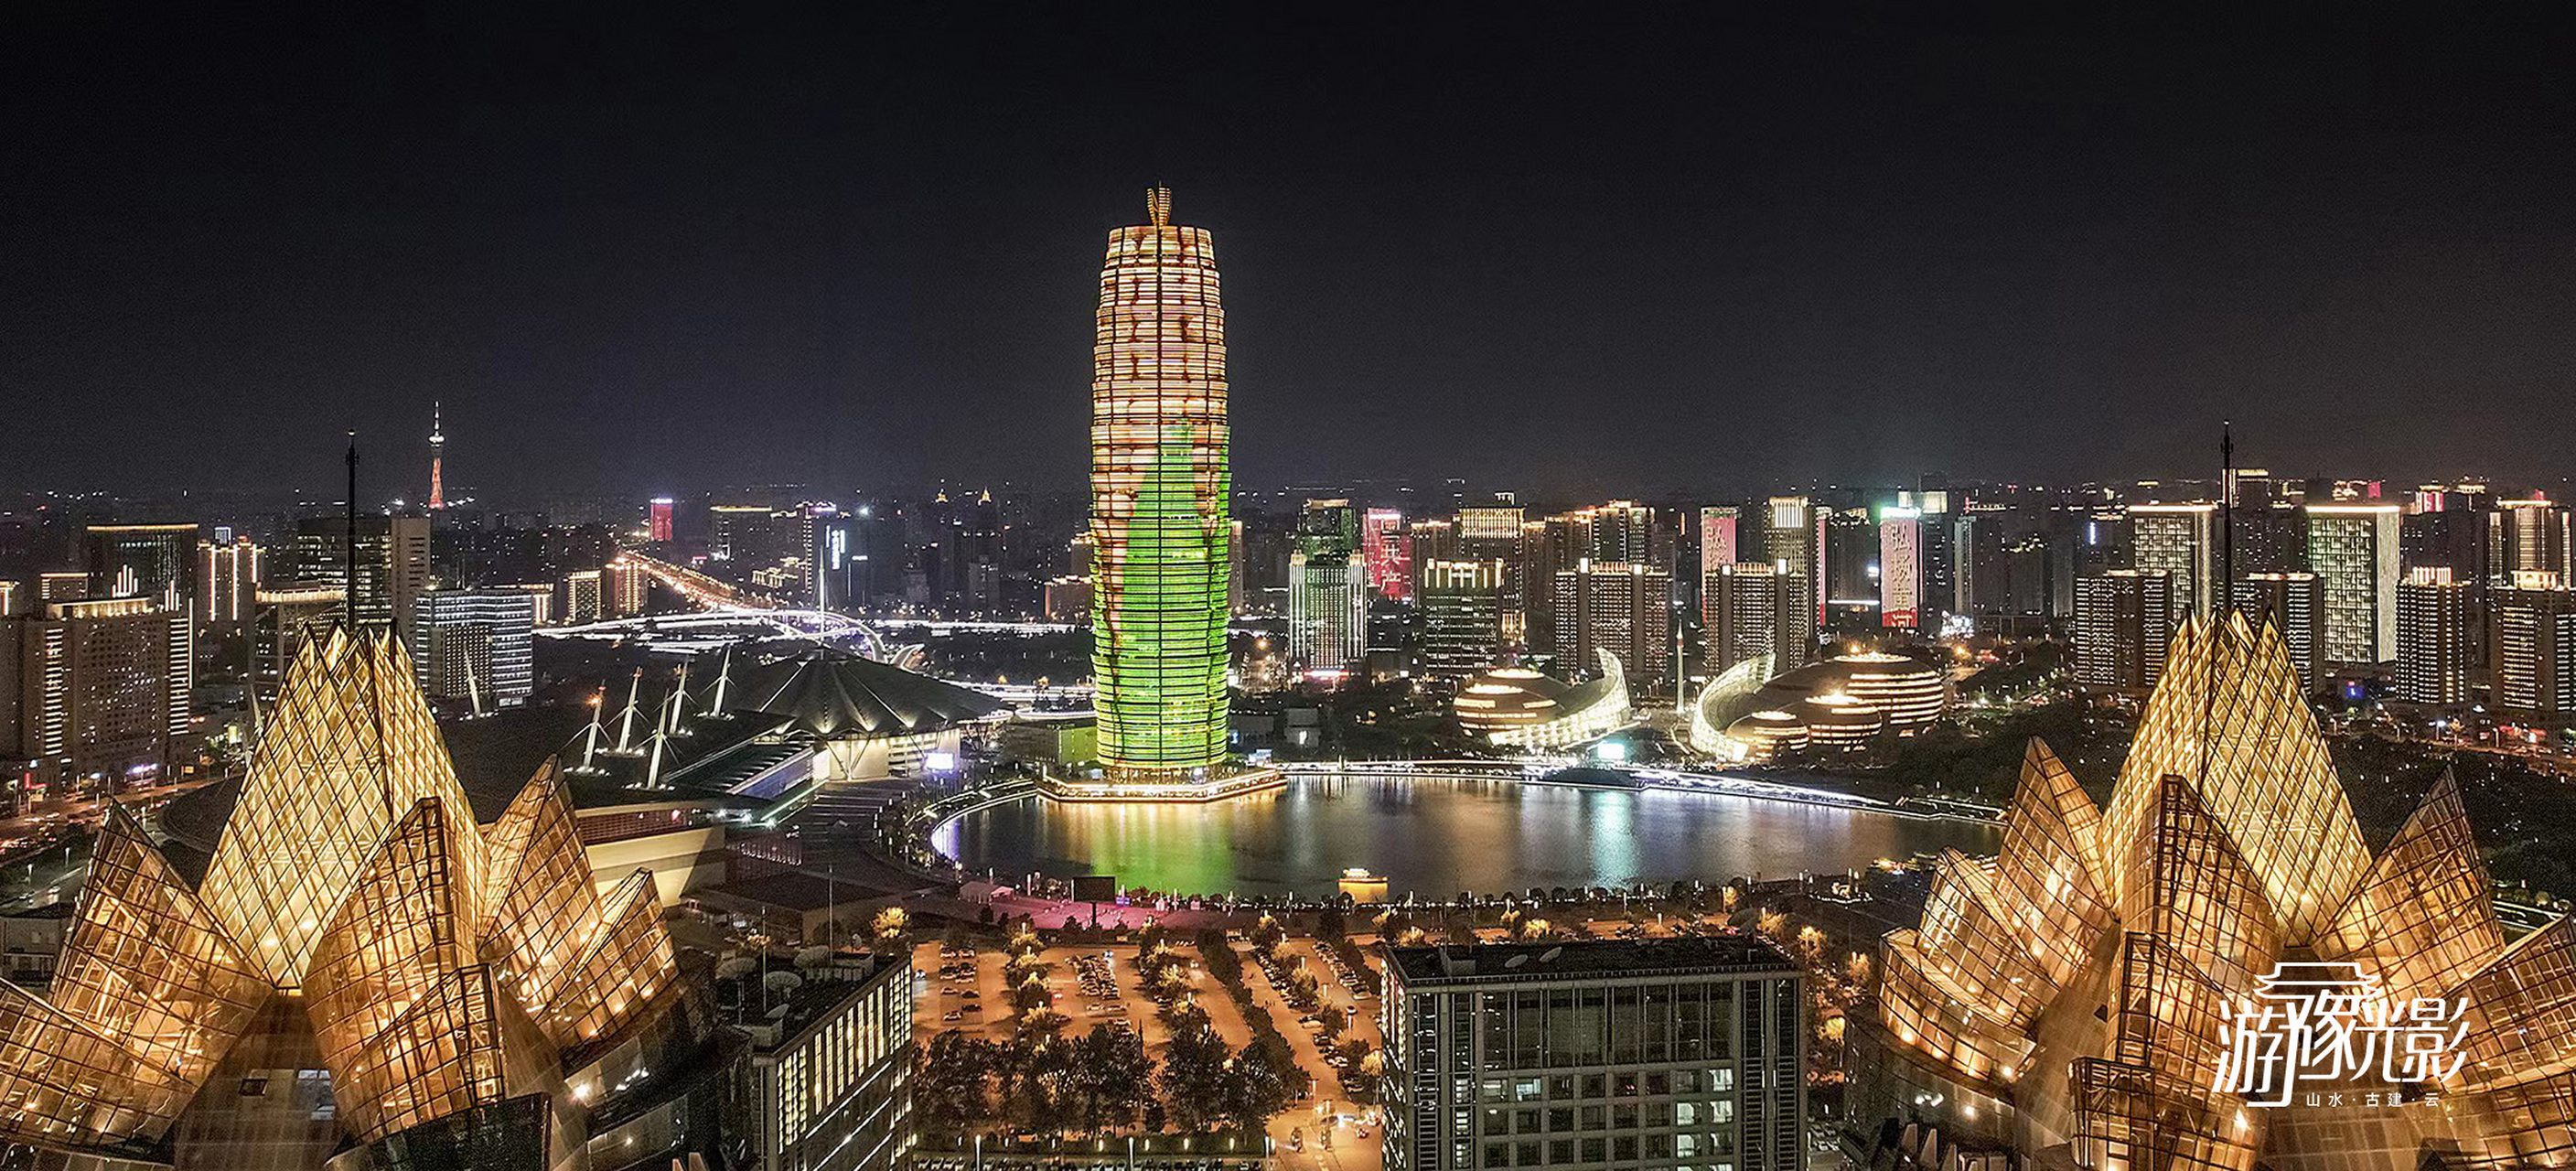 2021郑州玉米楼灯光秀图片